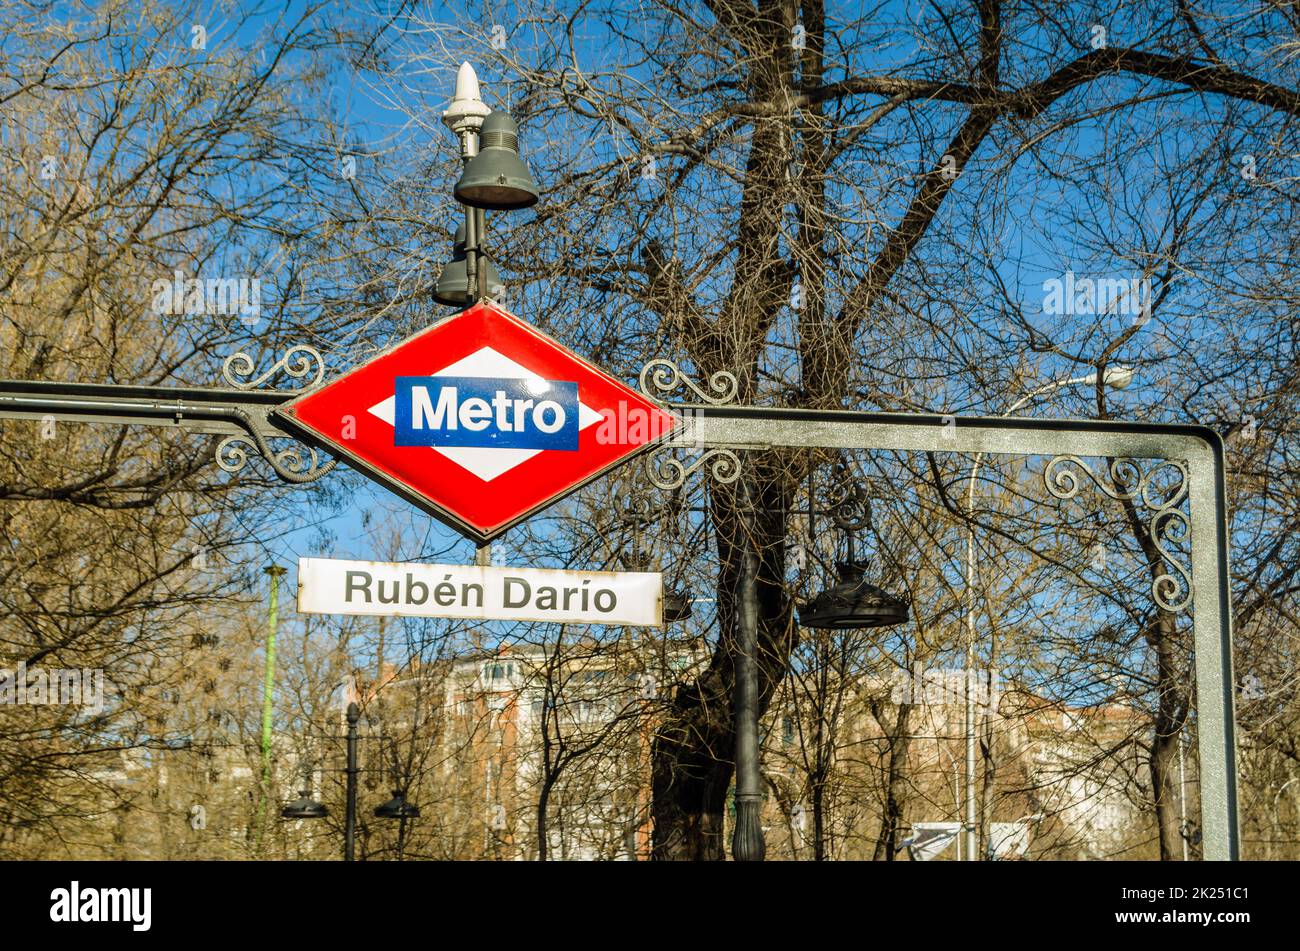 MADRID, ESPAGNE - 12 JANVIER 2022 : détail du panneau de métro de Madrid à la station de métro Ruben Dario Banque D'Images